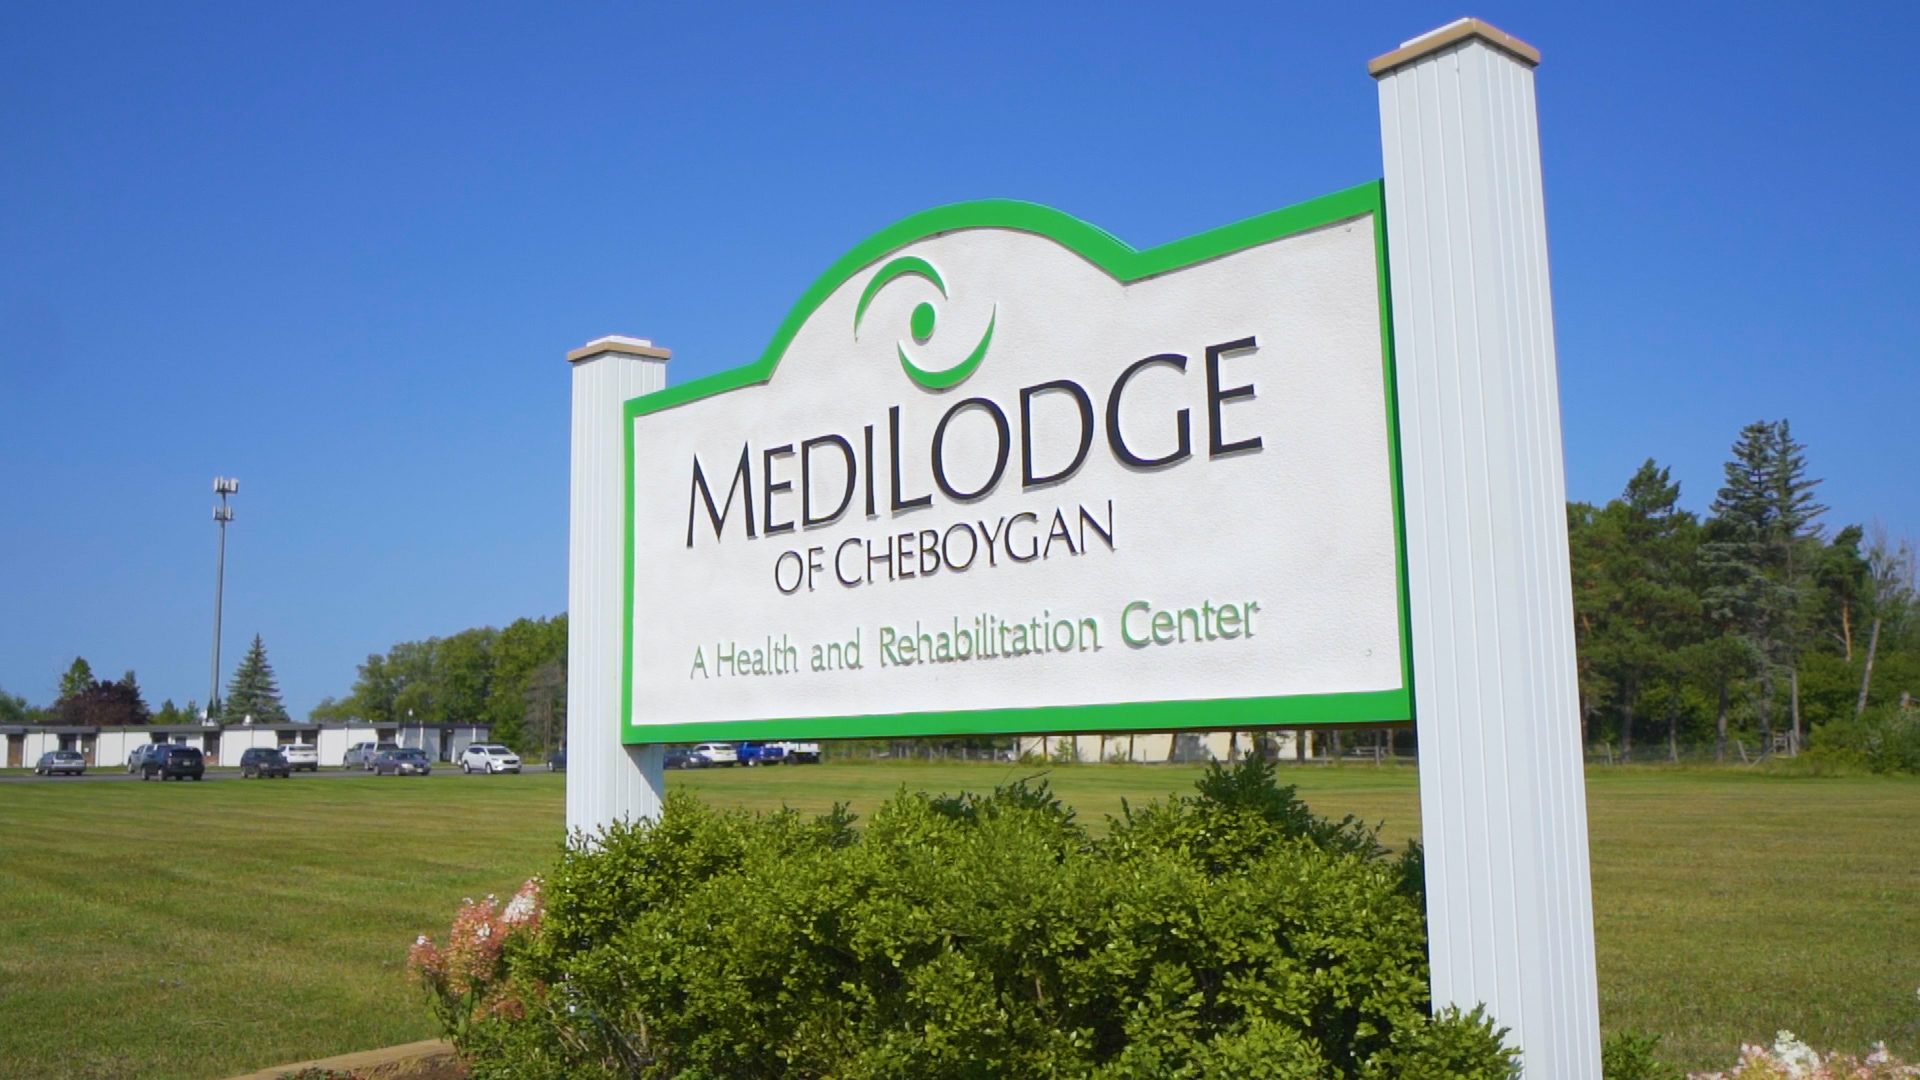 MediLodge of Cheboygan